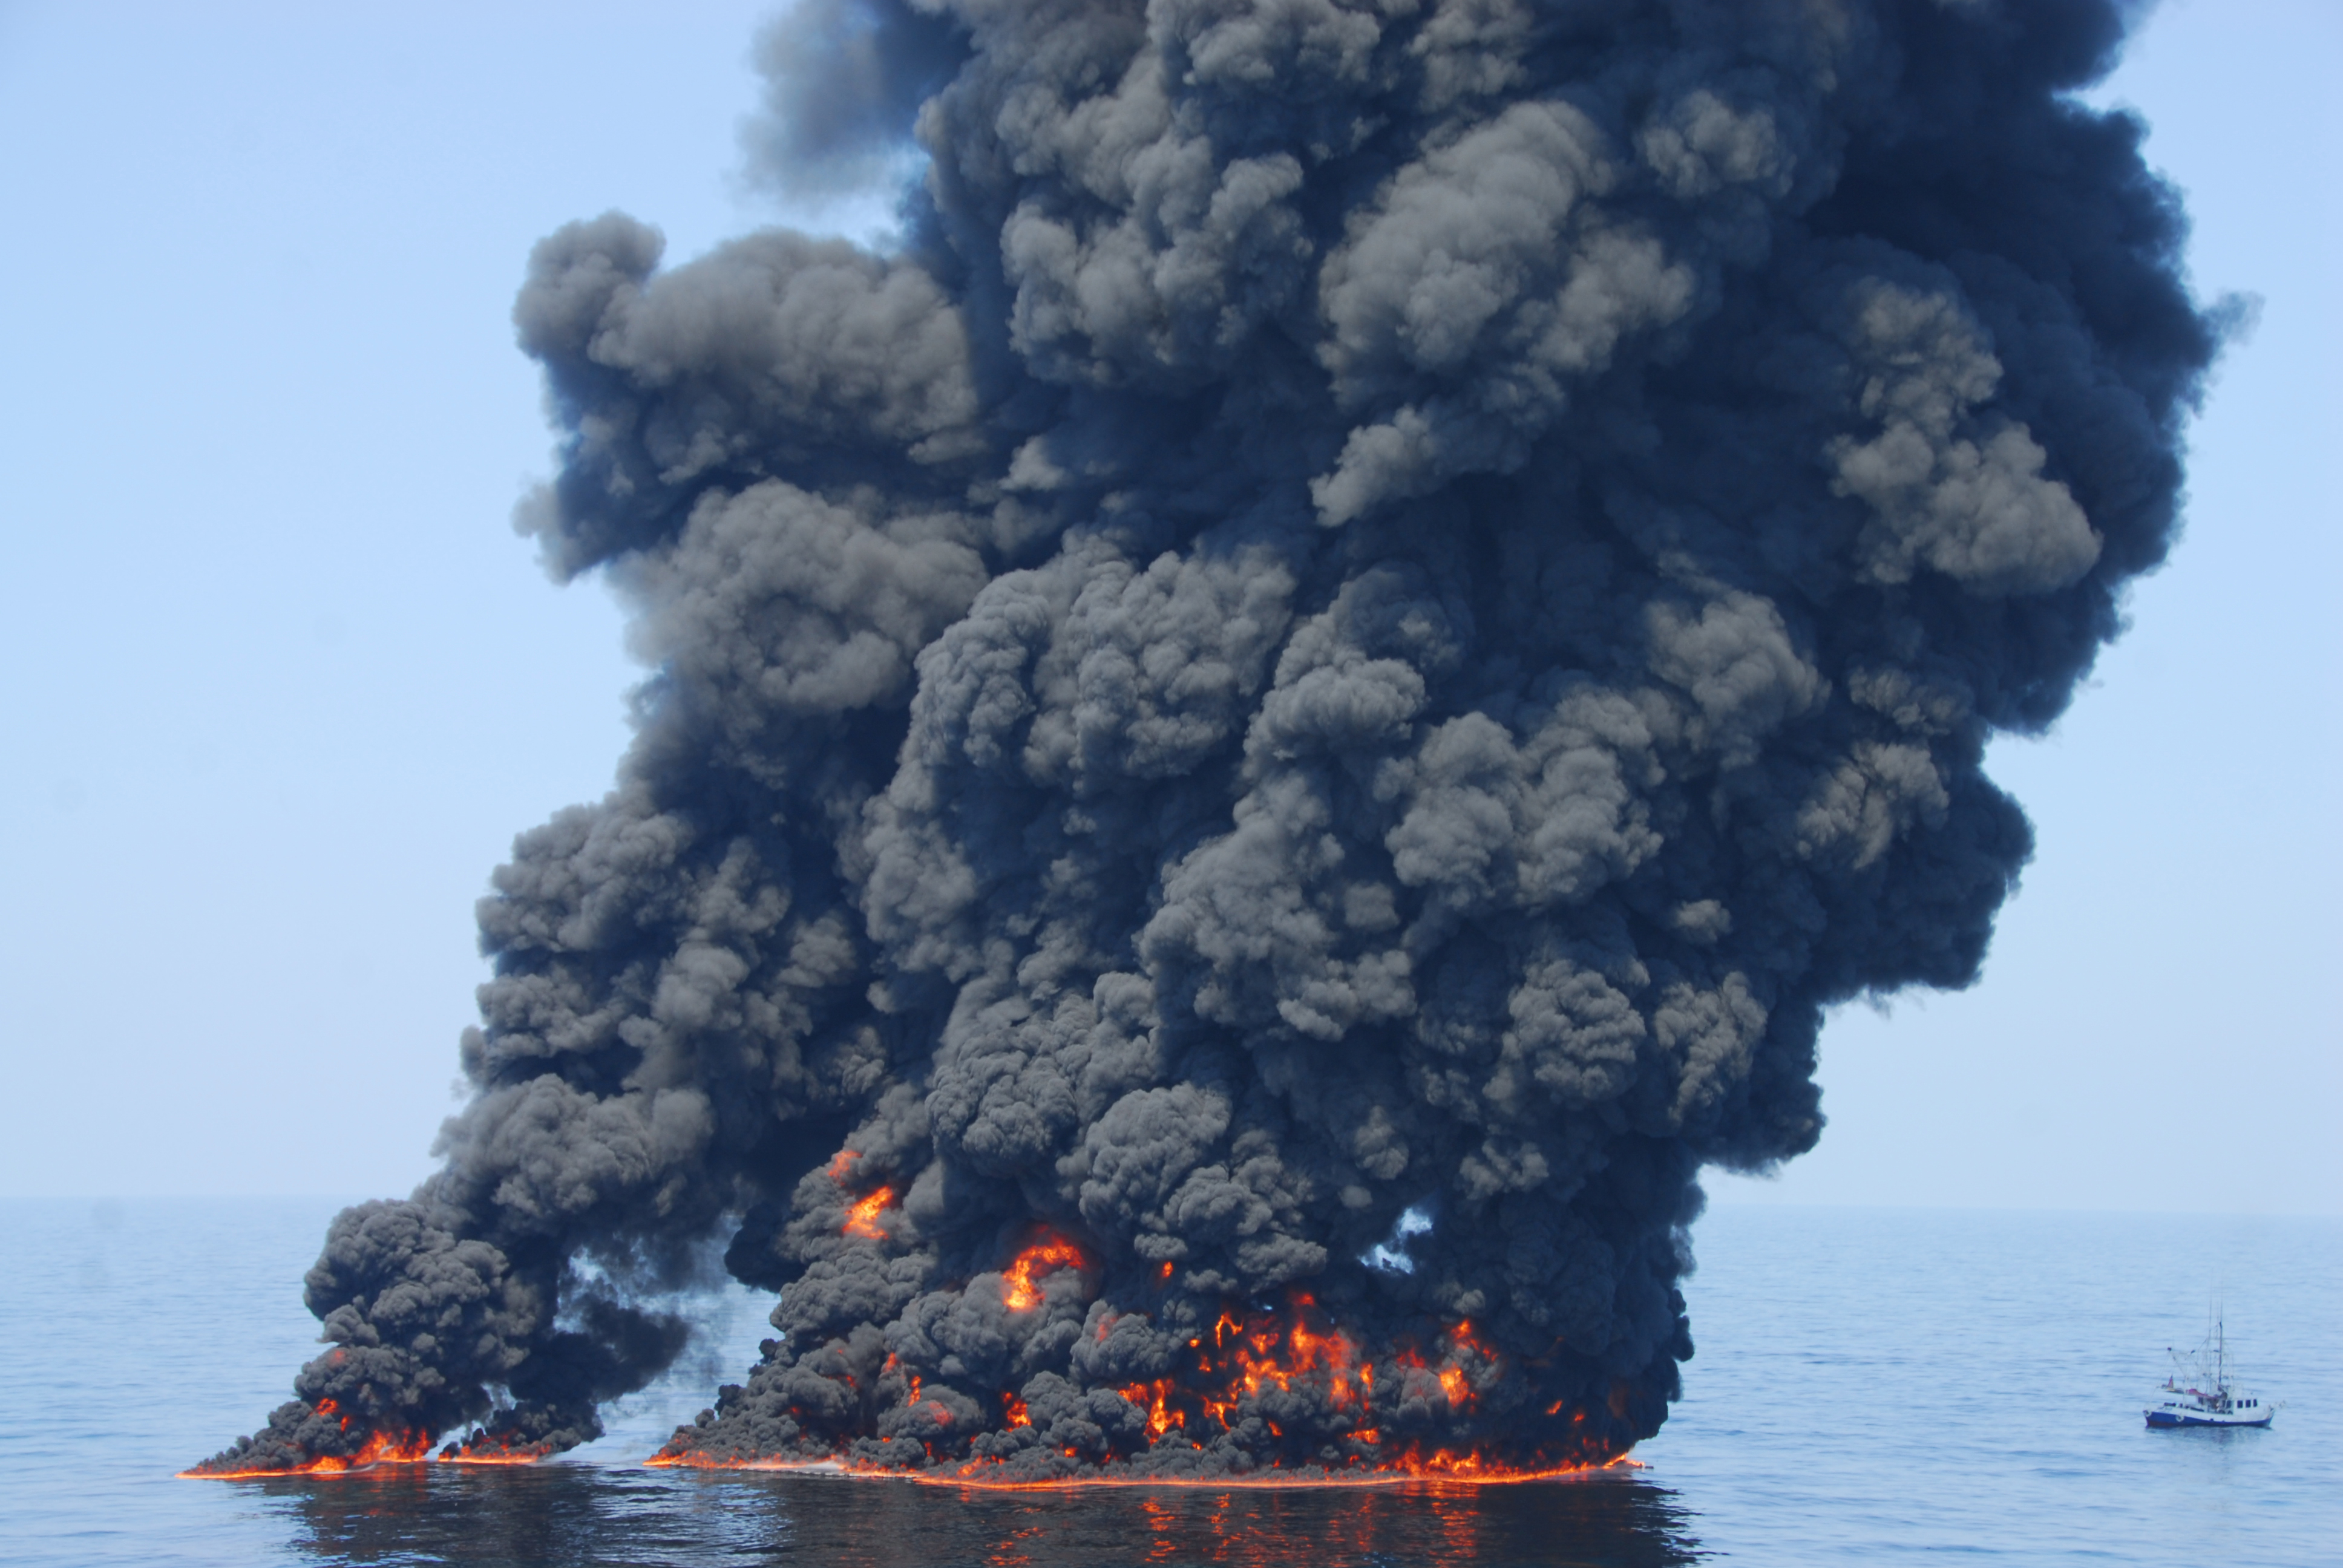 Аварии с загрязнением окружающей среды. Взрыв нефтяной платформы Deepwater Horizon - 20 апреля 2010 года. Deepwater Horizon разлив нефти. Разлив нефти в мексиканском заливе 2010. Разлив нефти BP Deepwater Horizon.